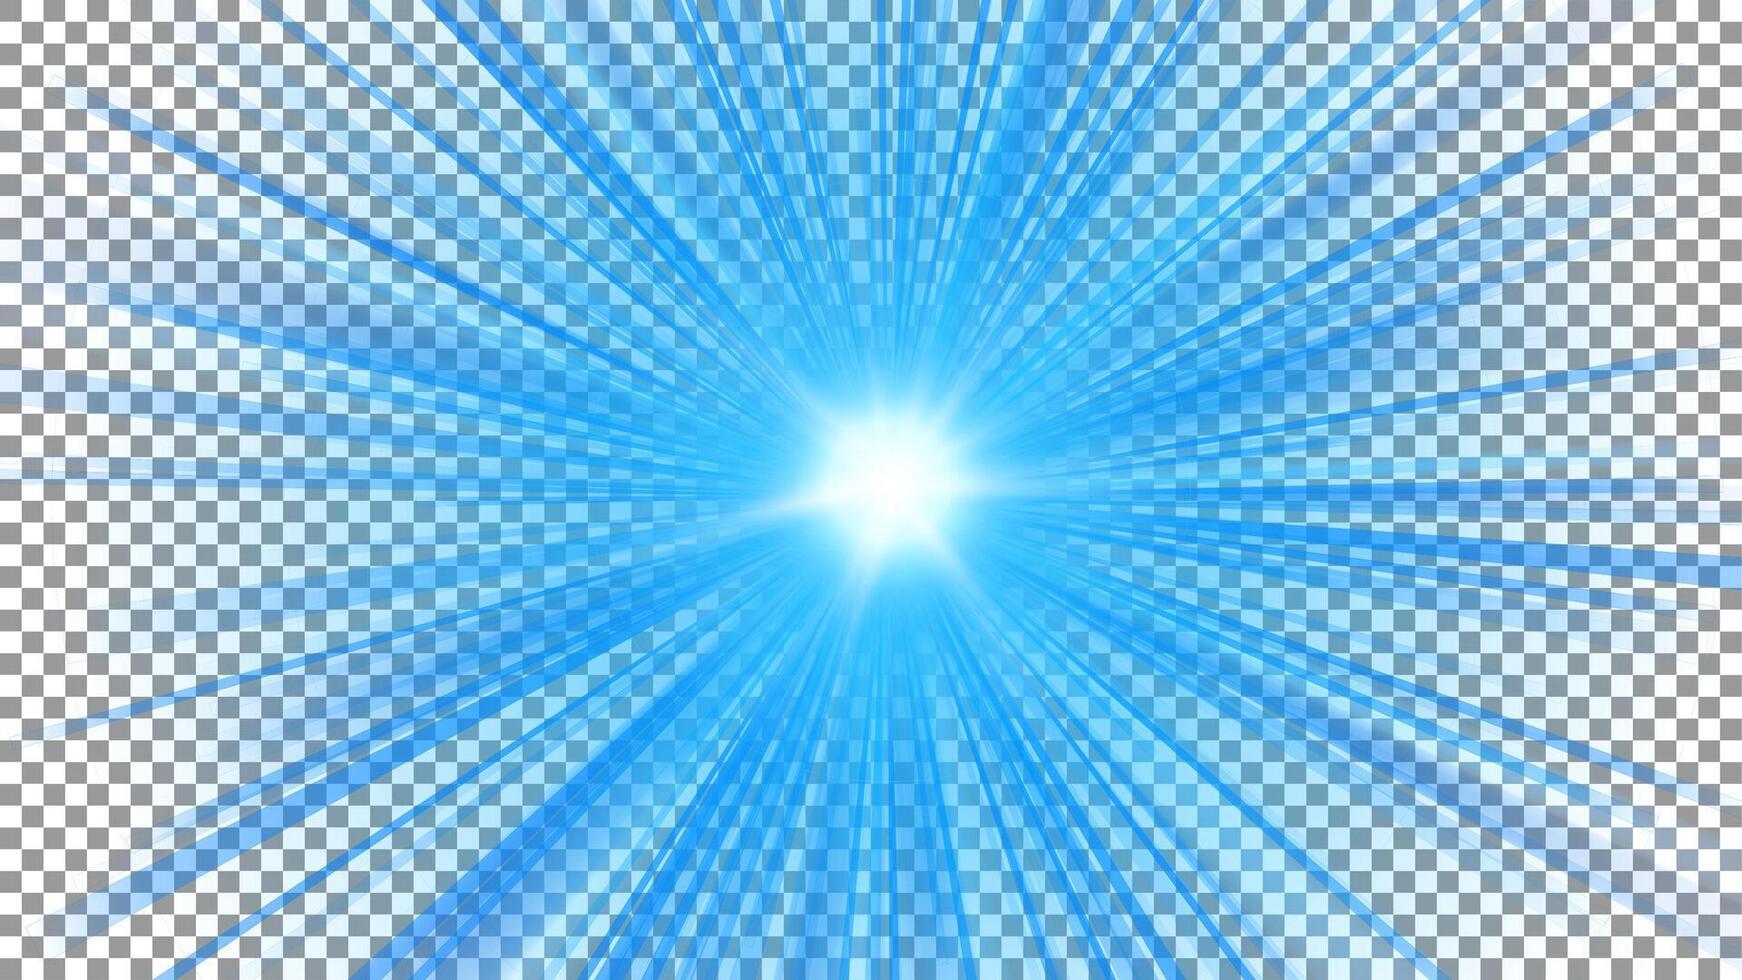 Blue Light Shining on White Pattern vector